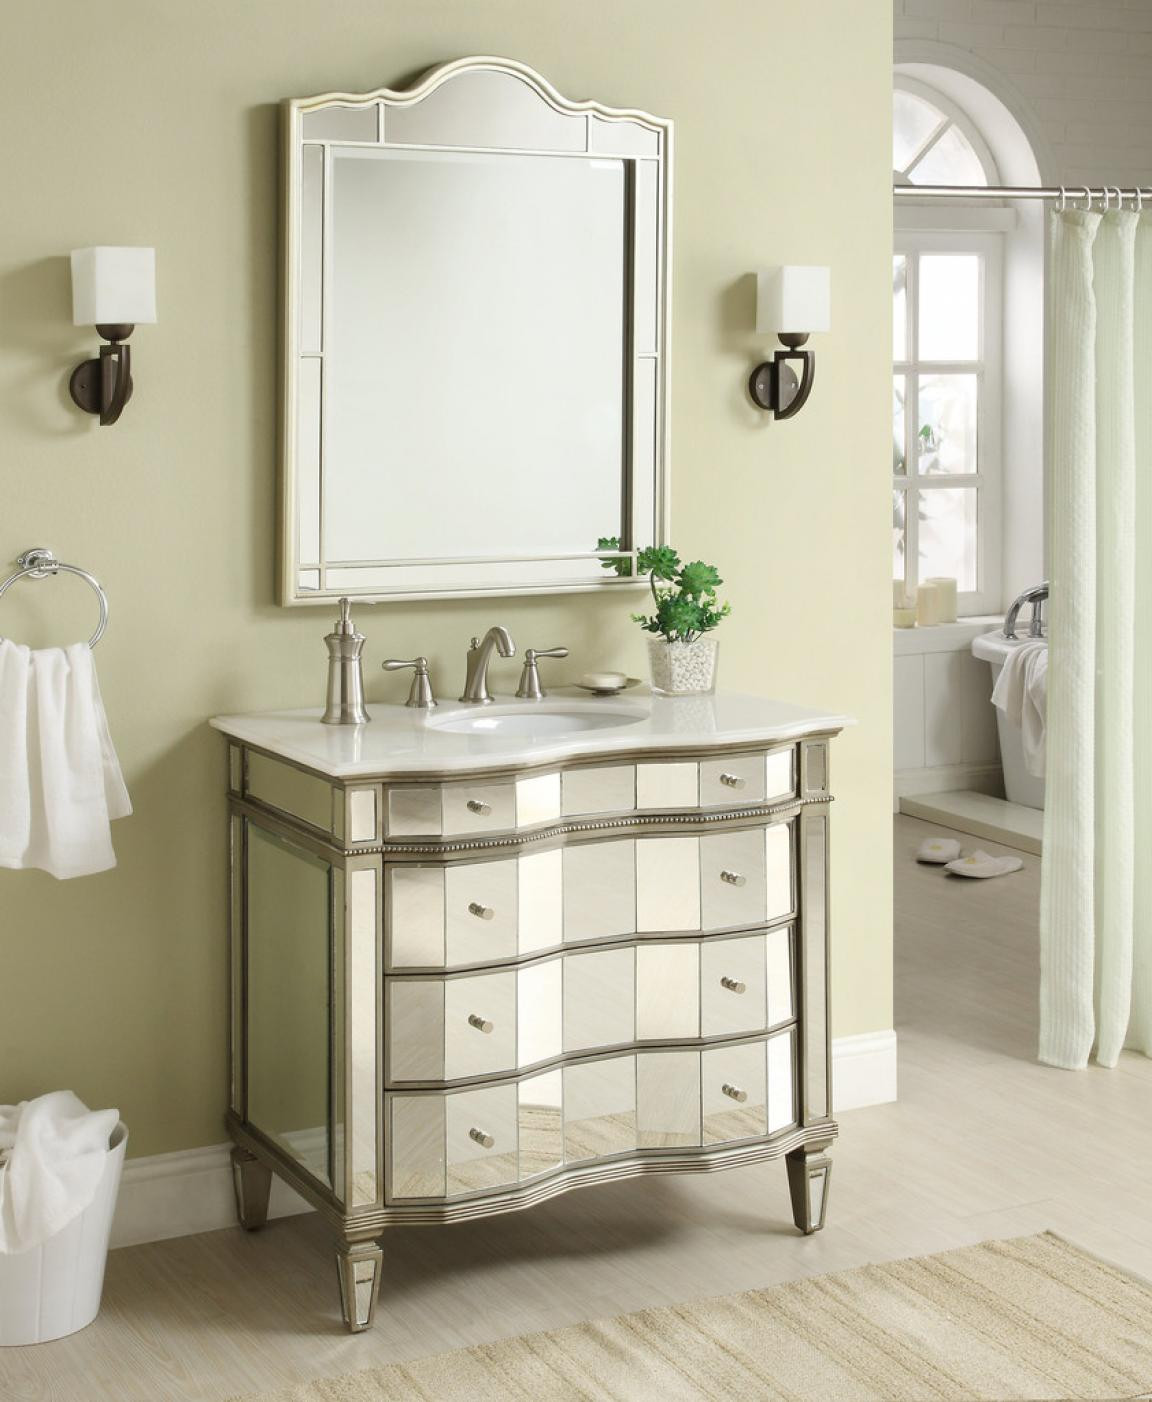 Bathroom Vanity With Mirror
 Choosing Vanity Mirrors for Bathroom Perfectly